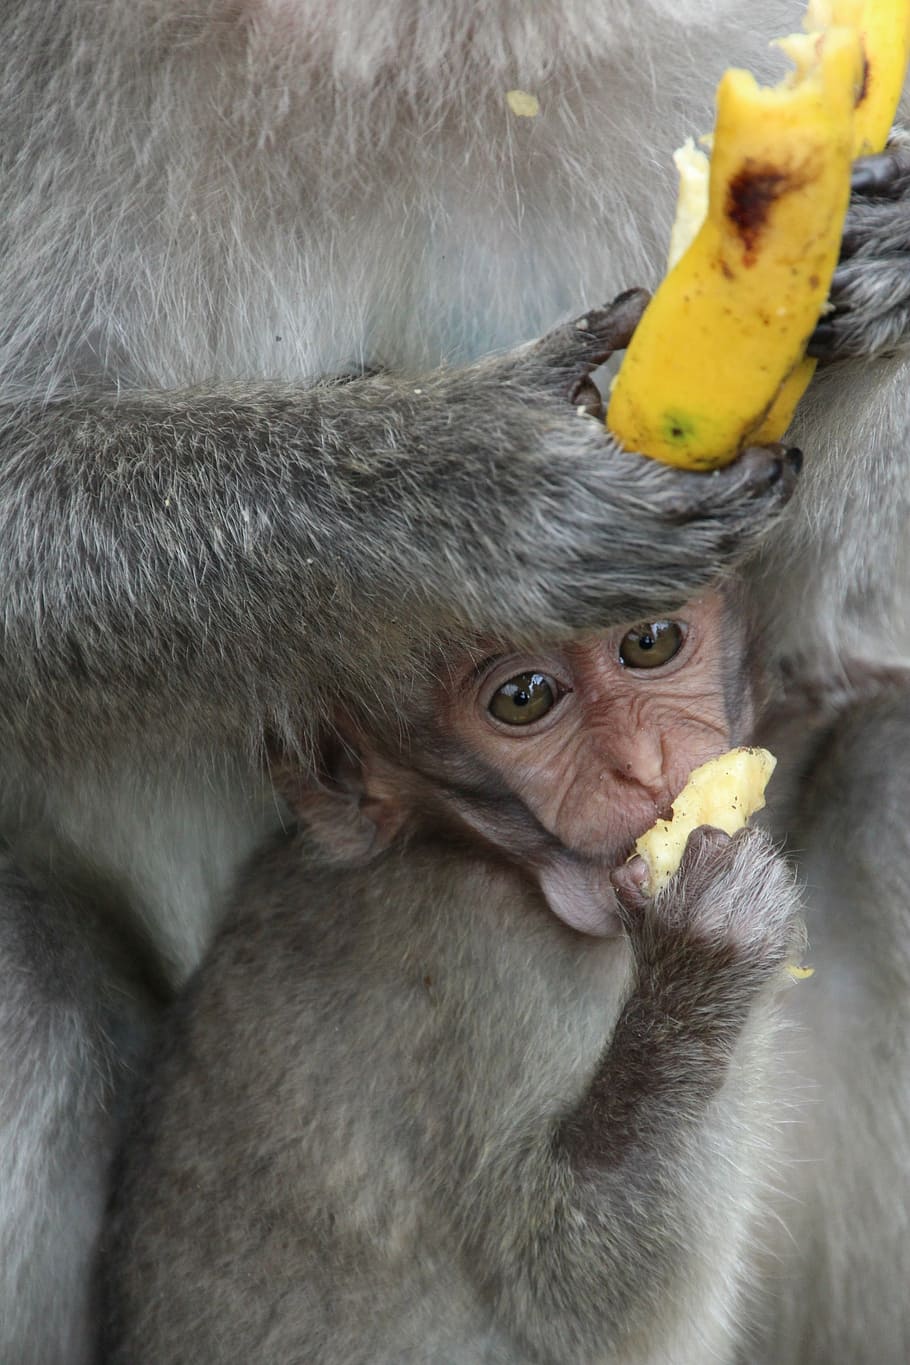 monkey, baby, äffchen, ape baby, monkey child, young animal, banana, bali, animal, macaque